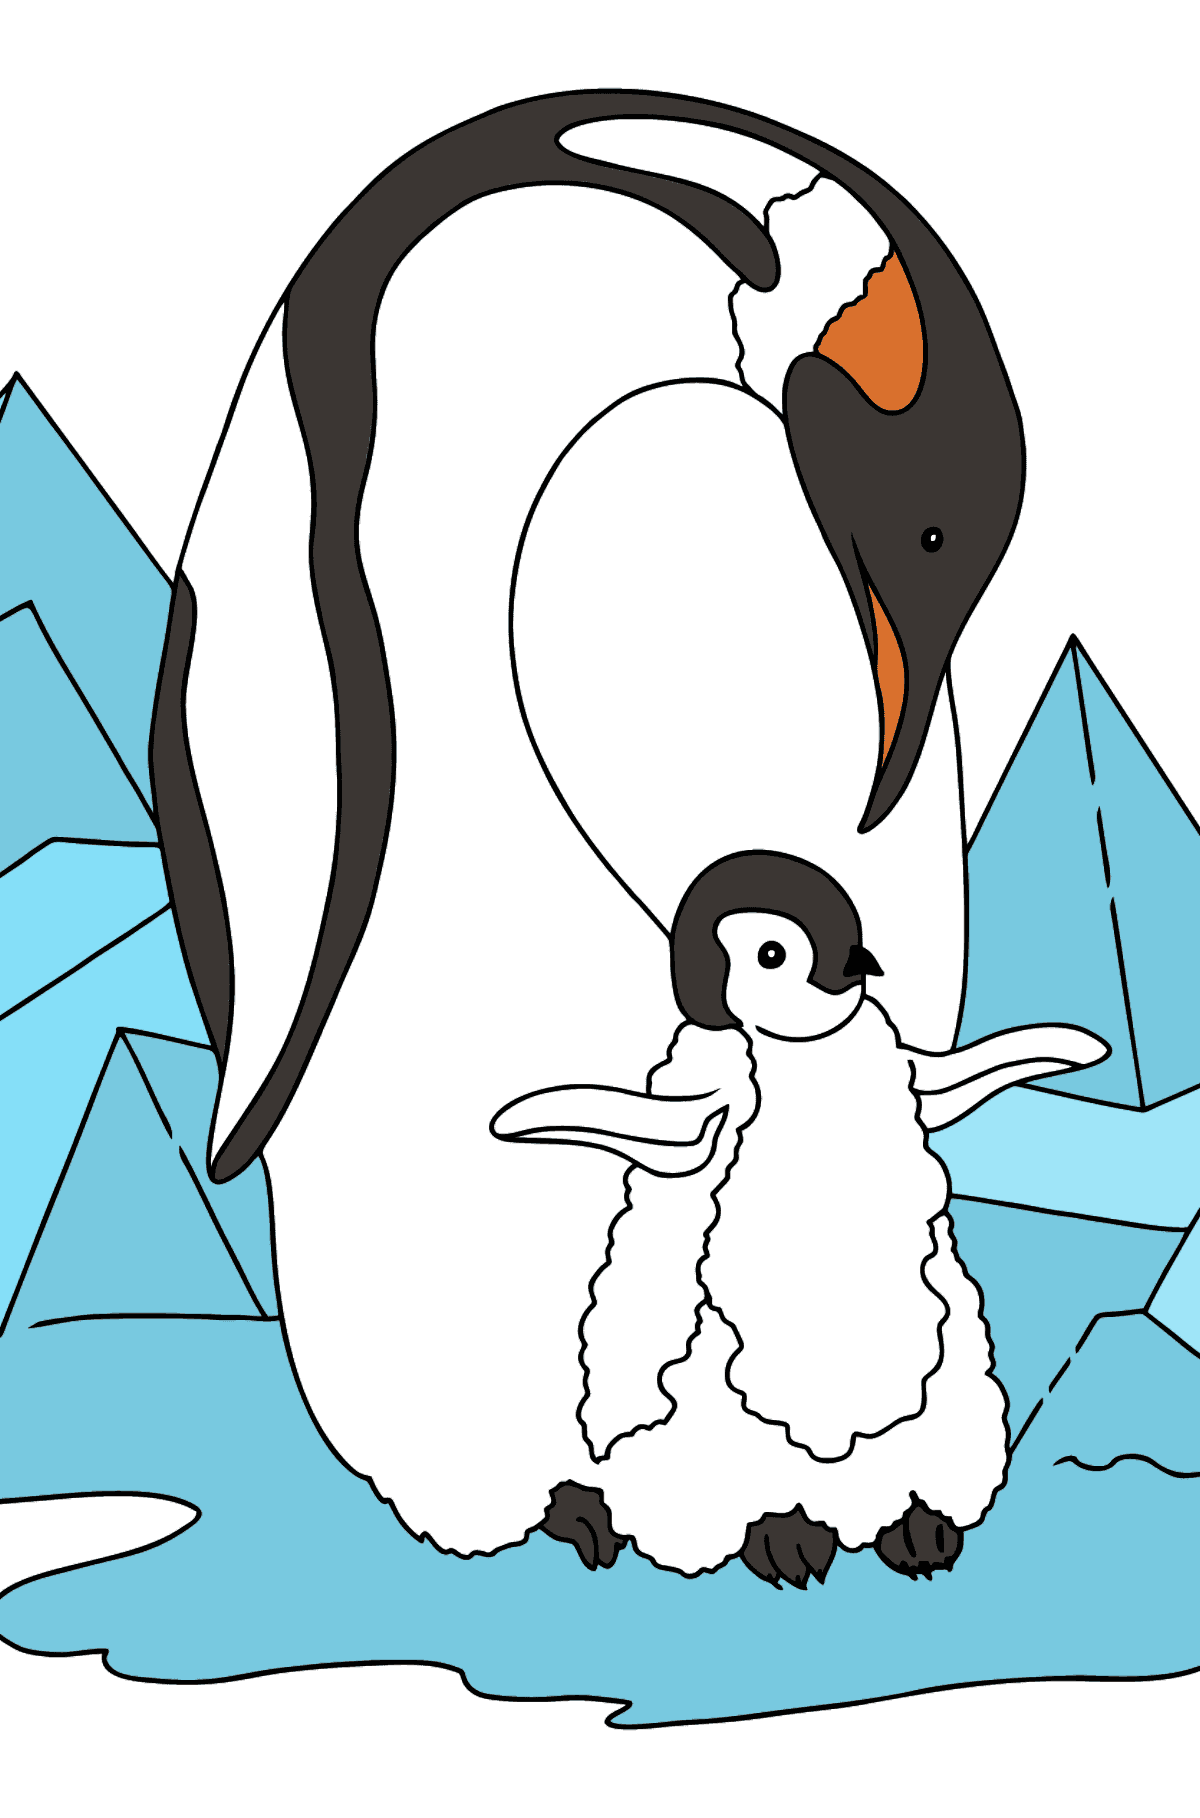 Malvorlage - Ein Pinguin mit einem Baby - Malvorlagen für Kinder